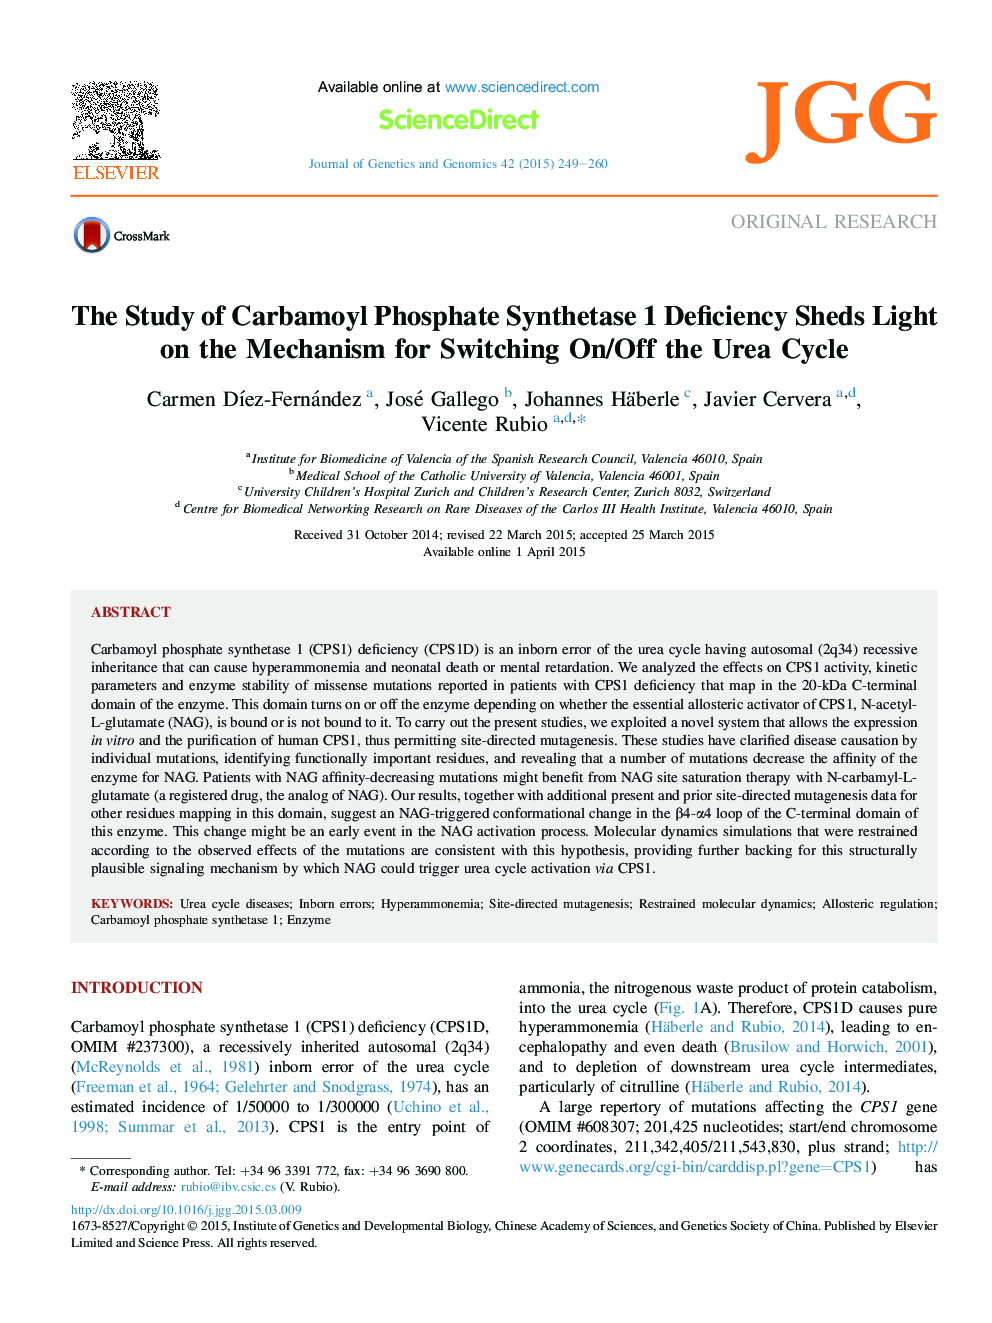 بررسی کمبود پروتئین کربامویل فسفات سنتتاز 1 در محیط مکانیسم برای روشن / خاموش کردن چرخه اوره 